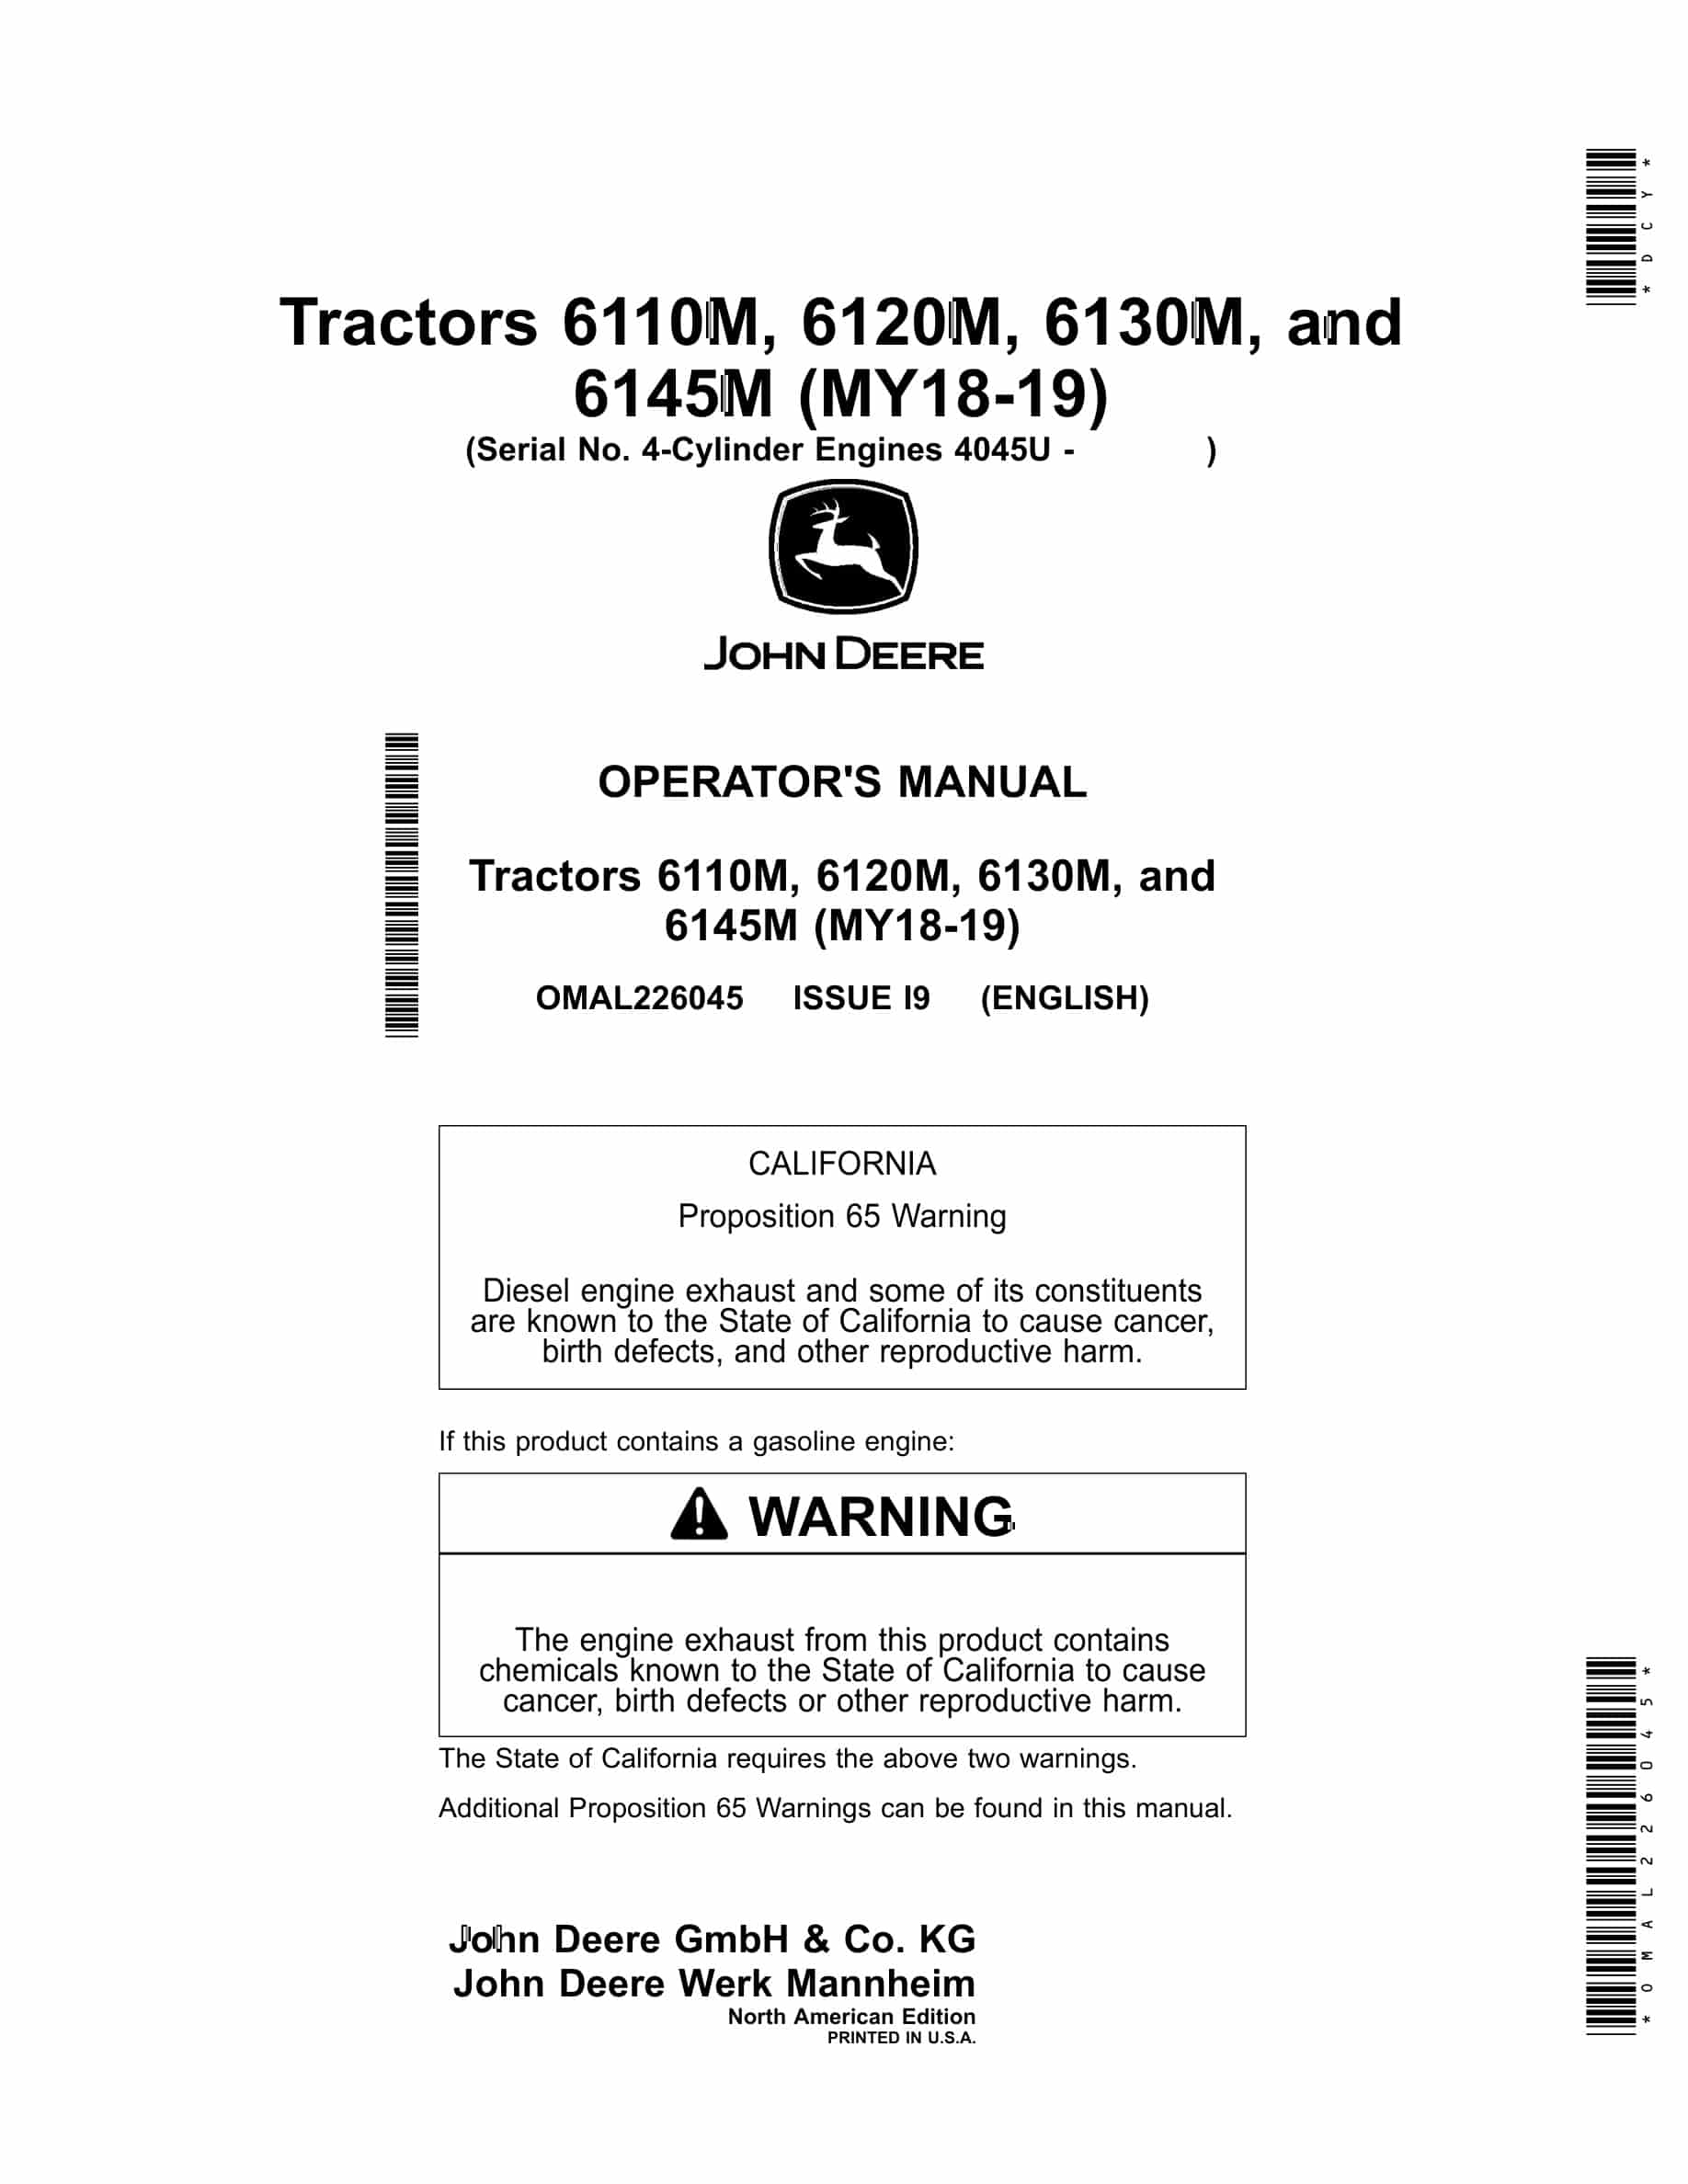 John Deere 6110M, 6120M, 6130M, and 6145M Tractor Operator Manual OMAL226045-1